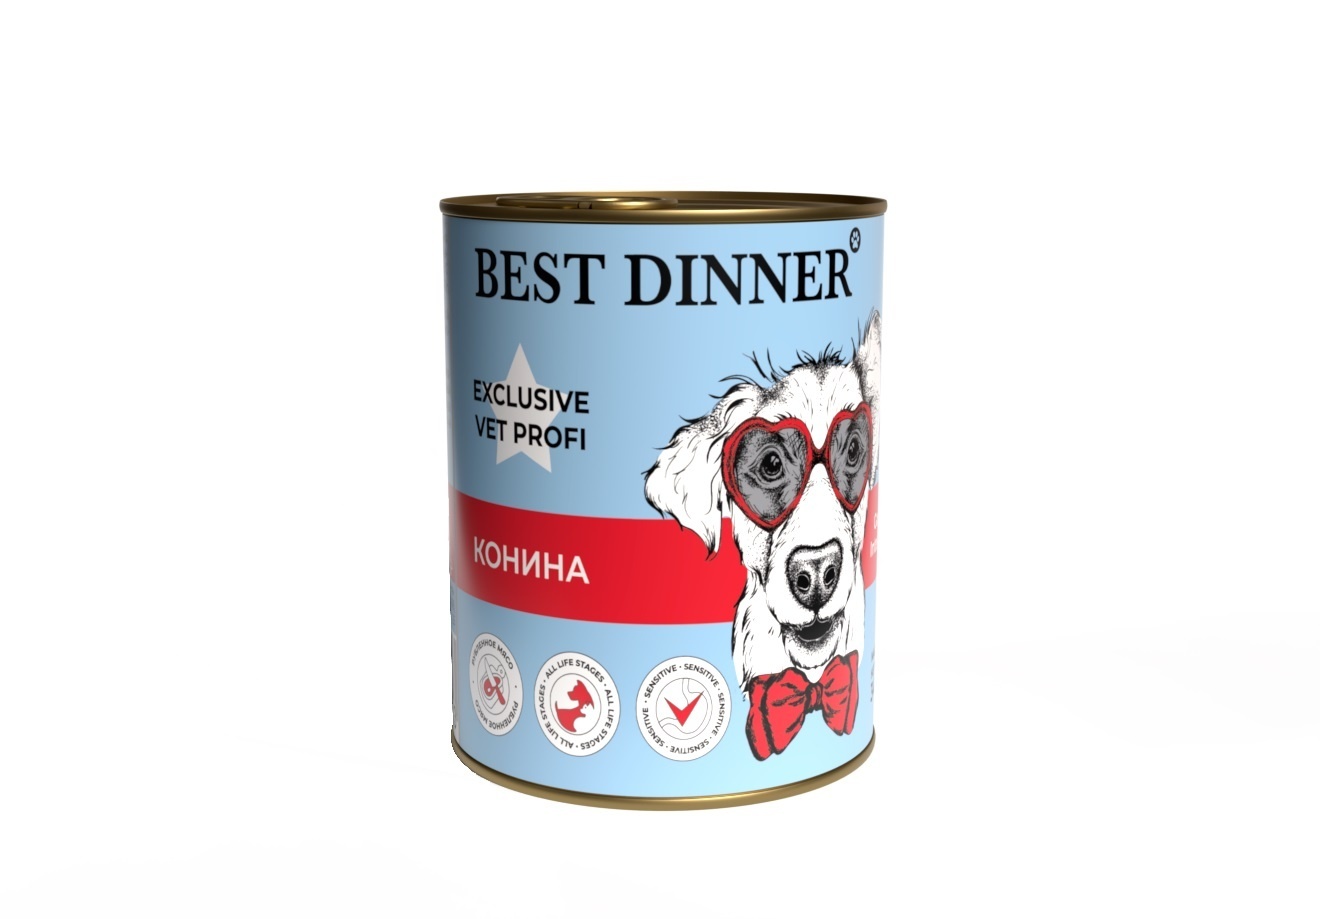 Best Dinner Best Dinner консервы Конина, паштет для собак с чувствительным пищеварением (340 г) best dinner best dinner гипоаллергенные консервы индейка и кролик для собак всех пород 340 г